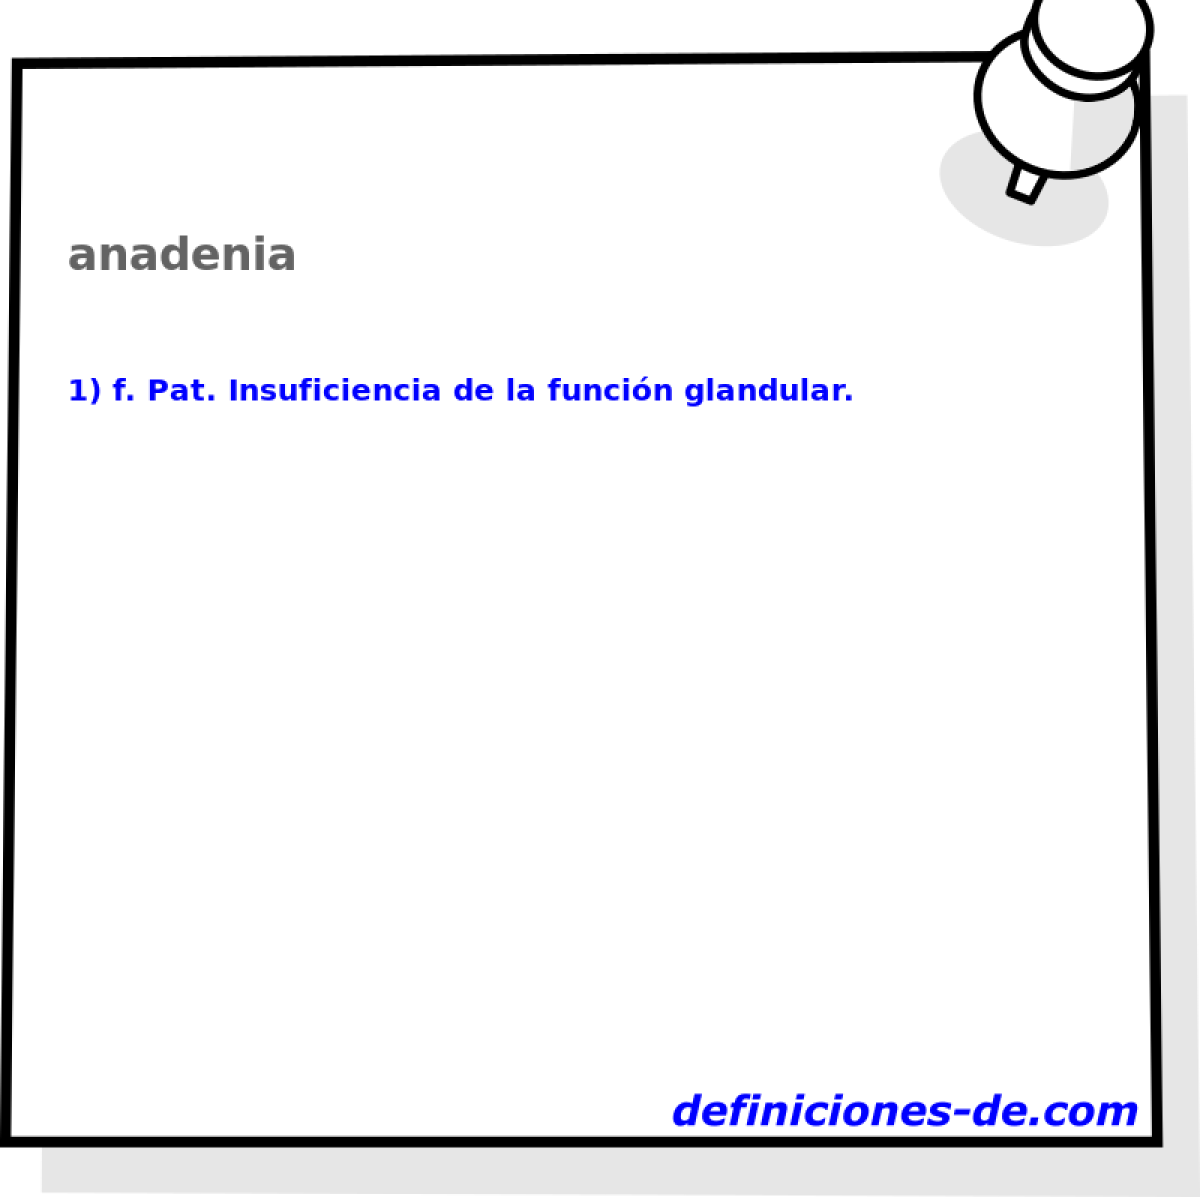 anadenia 